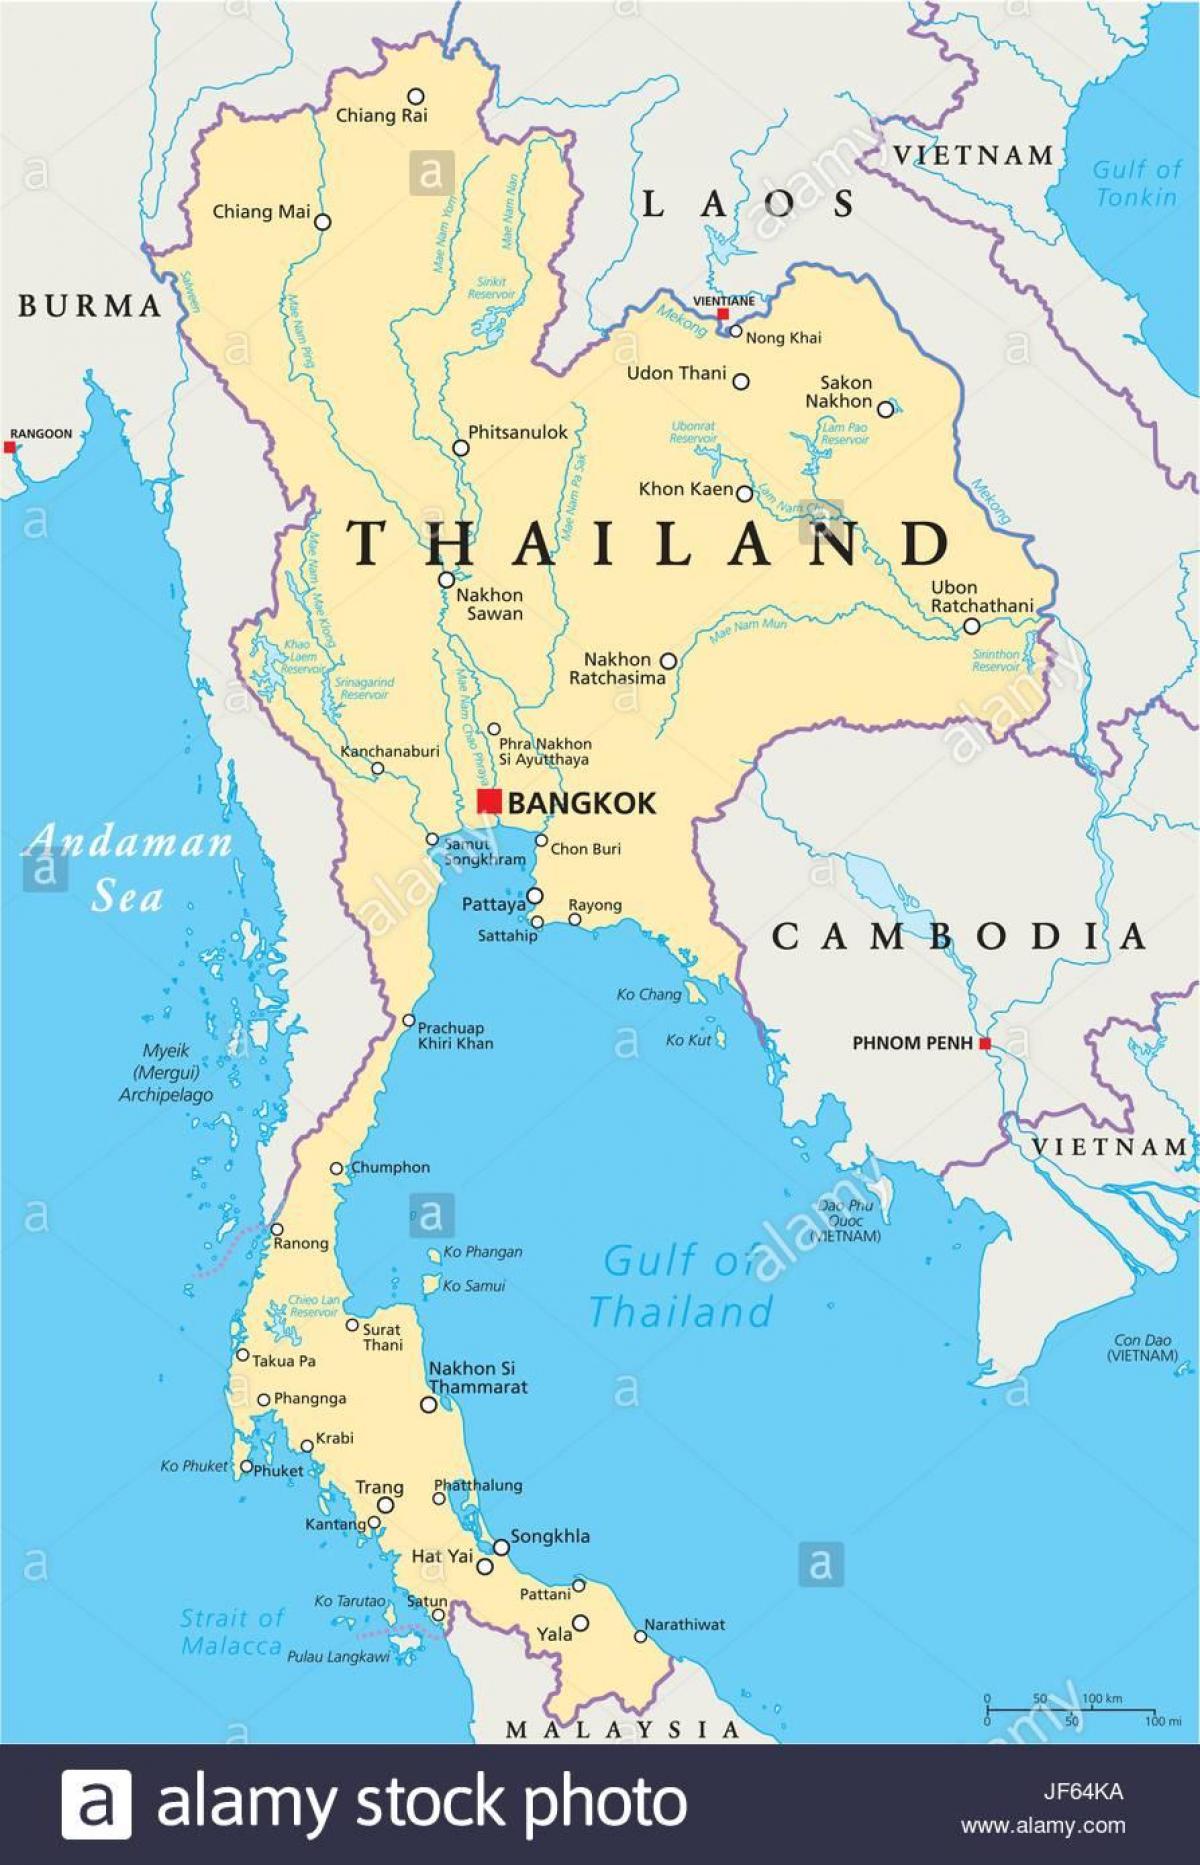 Bangkok, Tajland karta svijeta